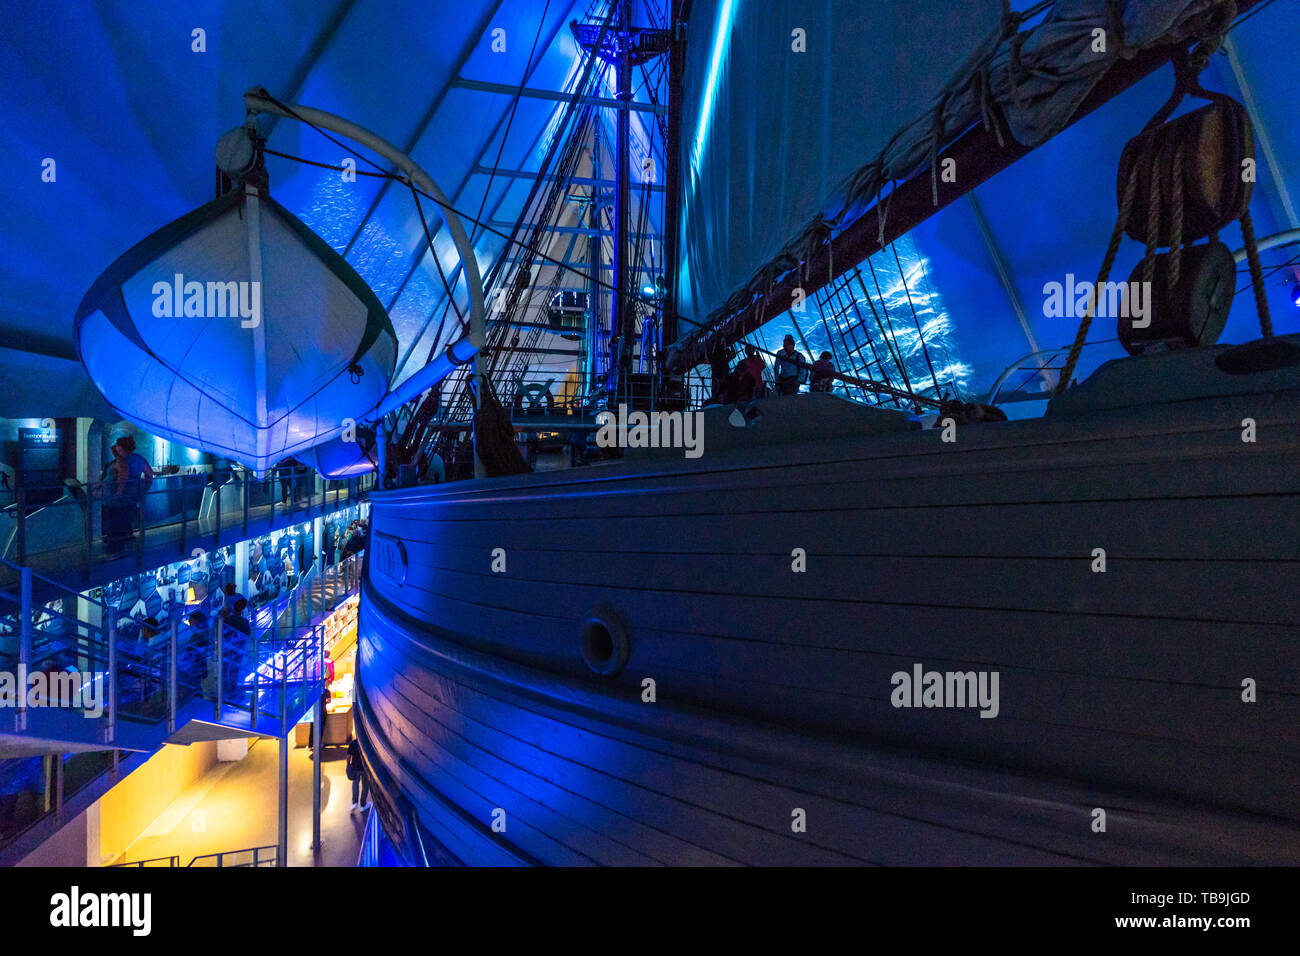 Seitliche Sicht auf das Polarschiff Fram von norwegischen Forschern in den polaren Expeditionen verwendet, Oslo, Norwegen Stockfoto